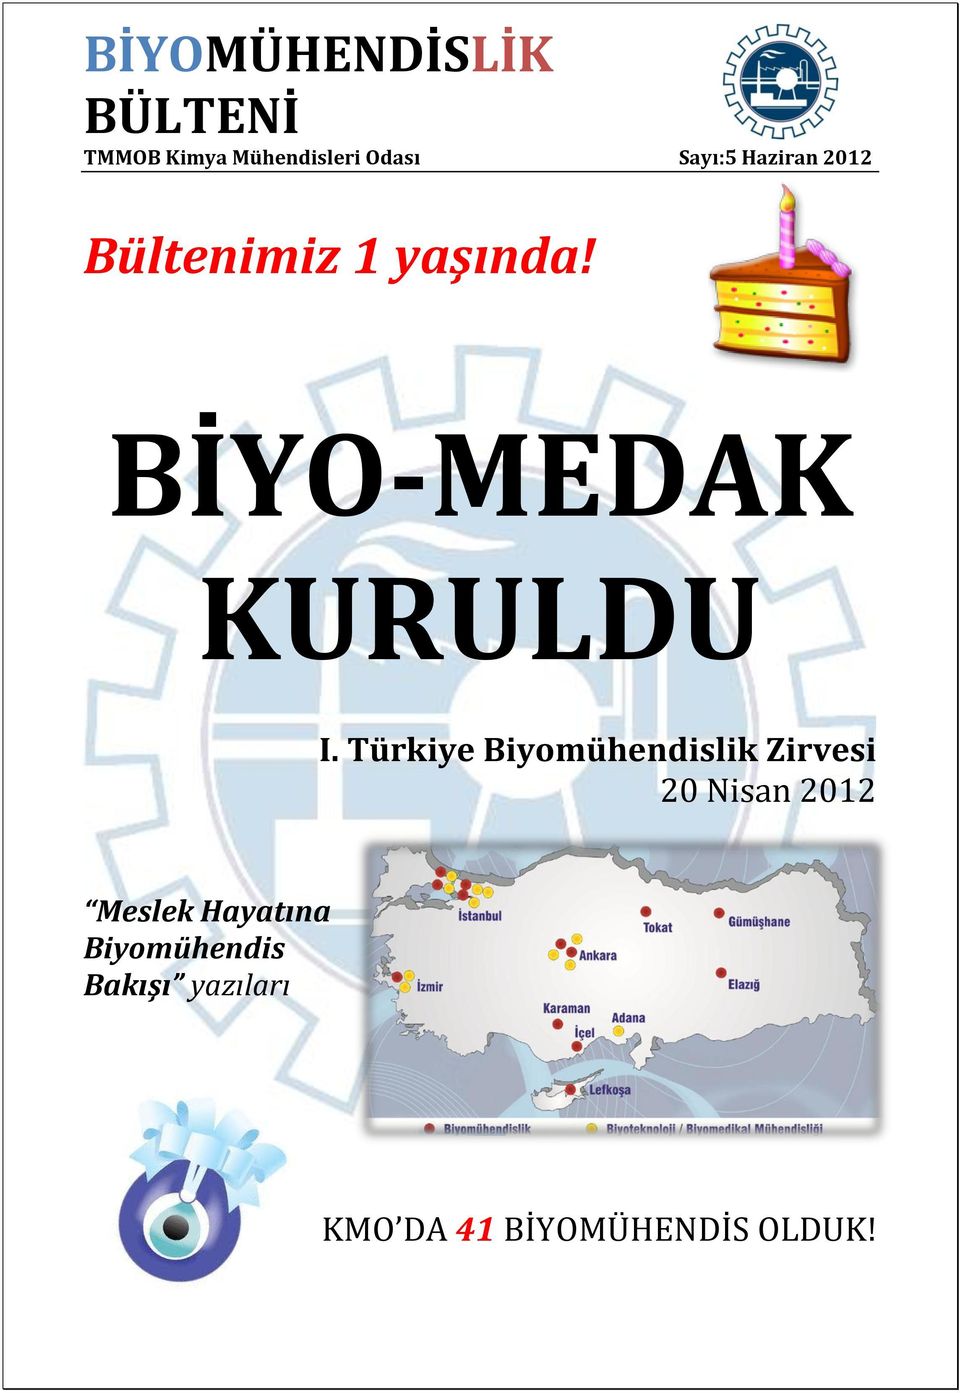 Türkiye Biyomühendislik Zirvesi 20 Nisan 2012